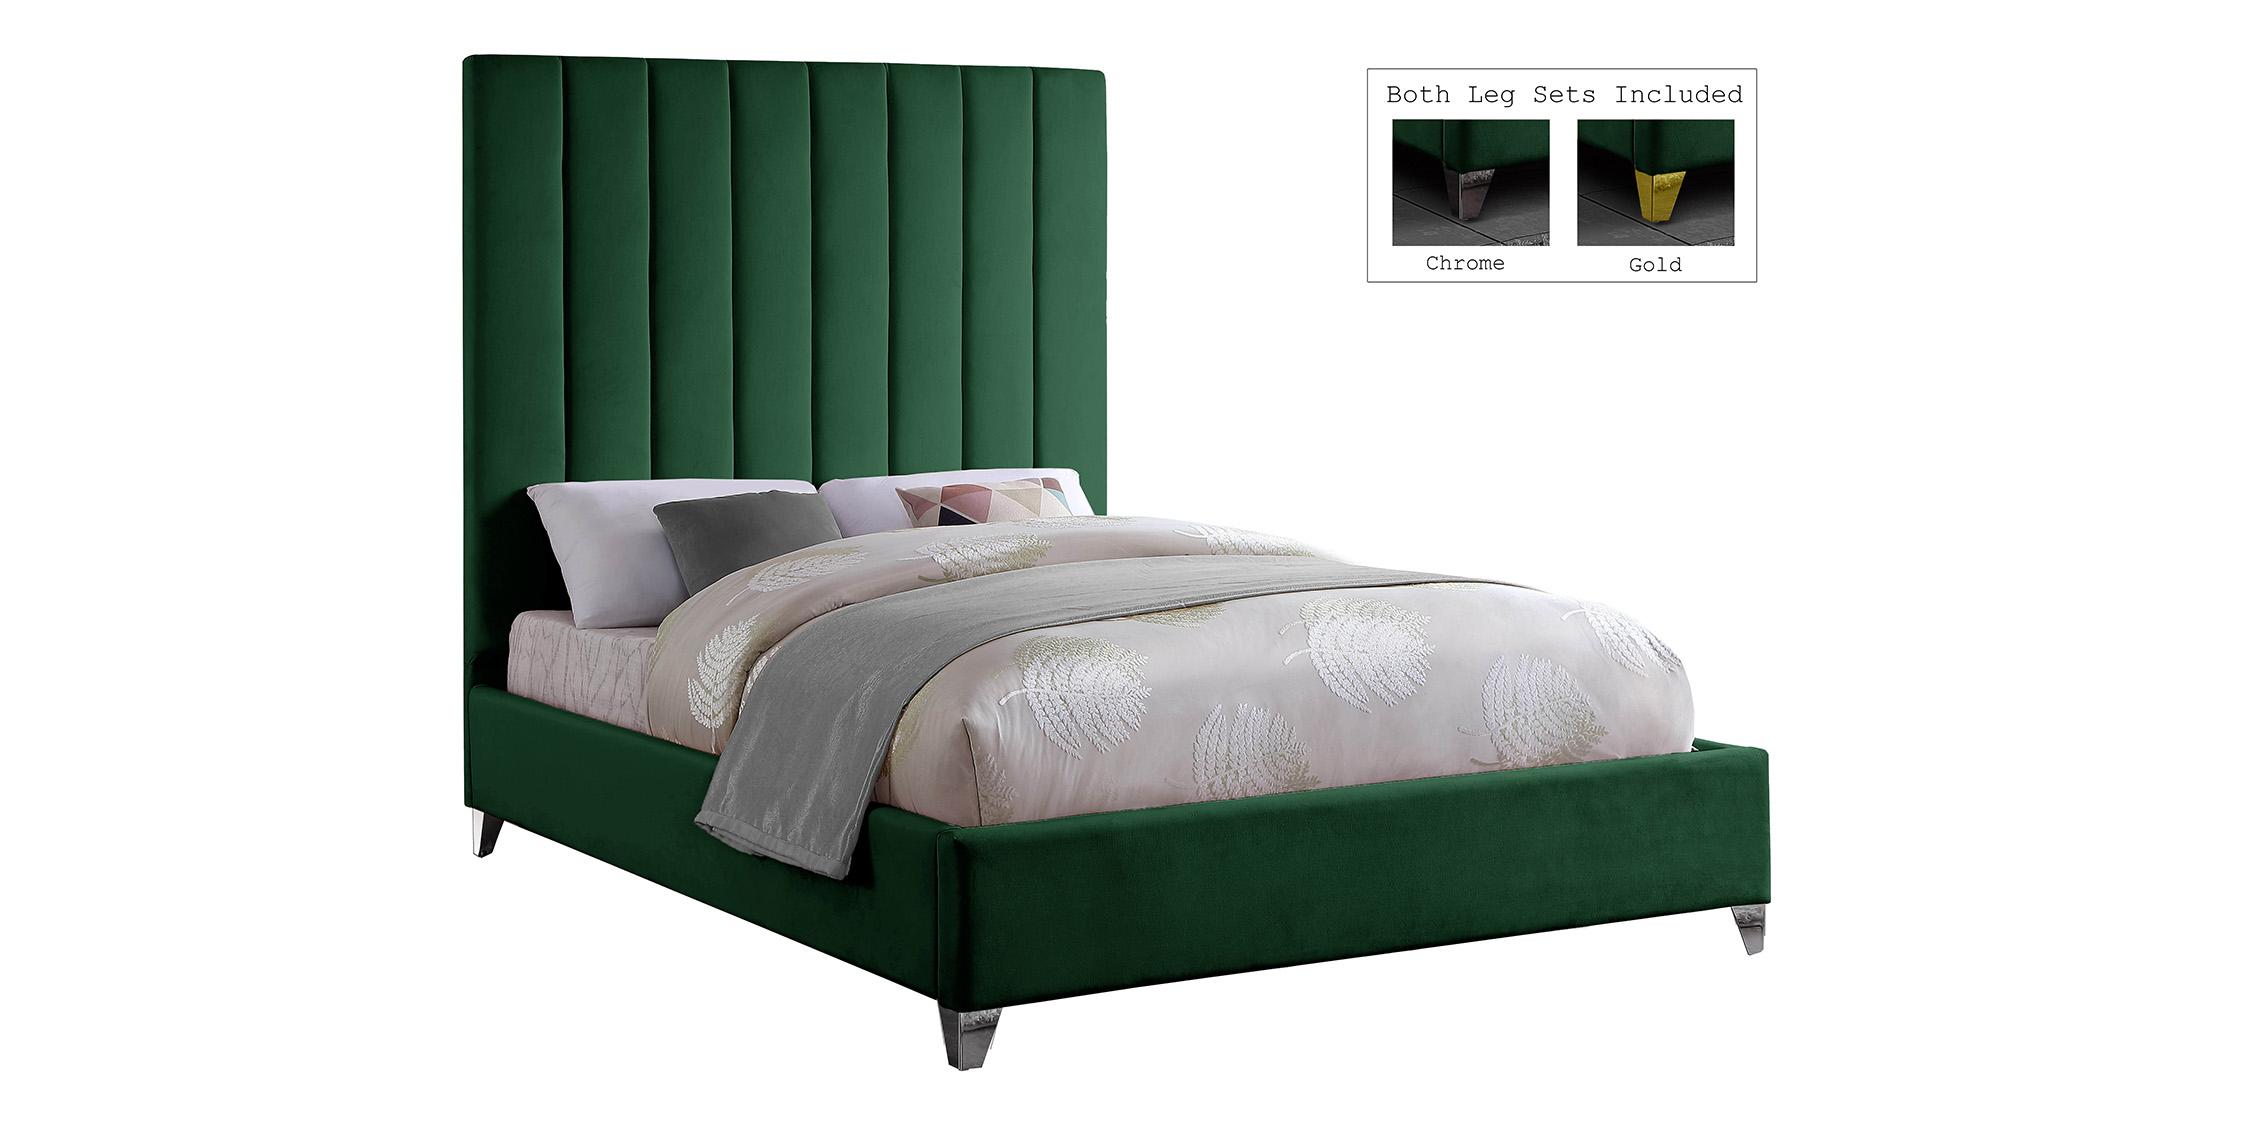 

    
ViaGreen-Q Meridian Furniture Platform Bed
